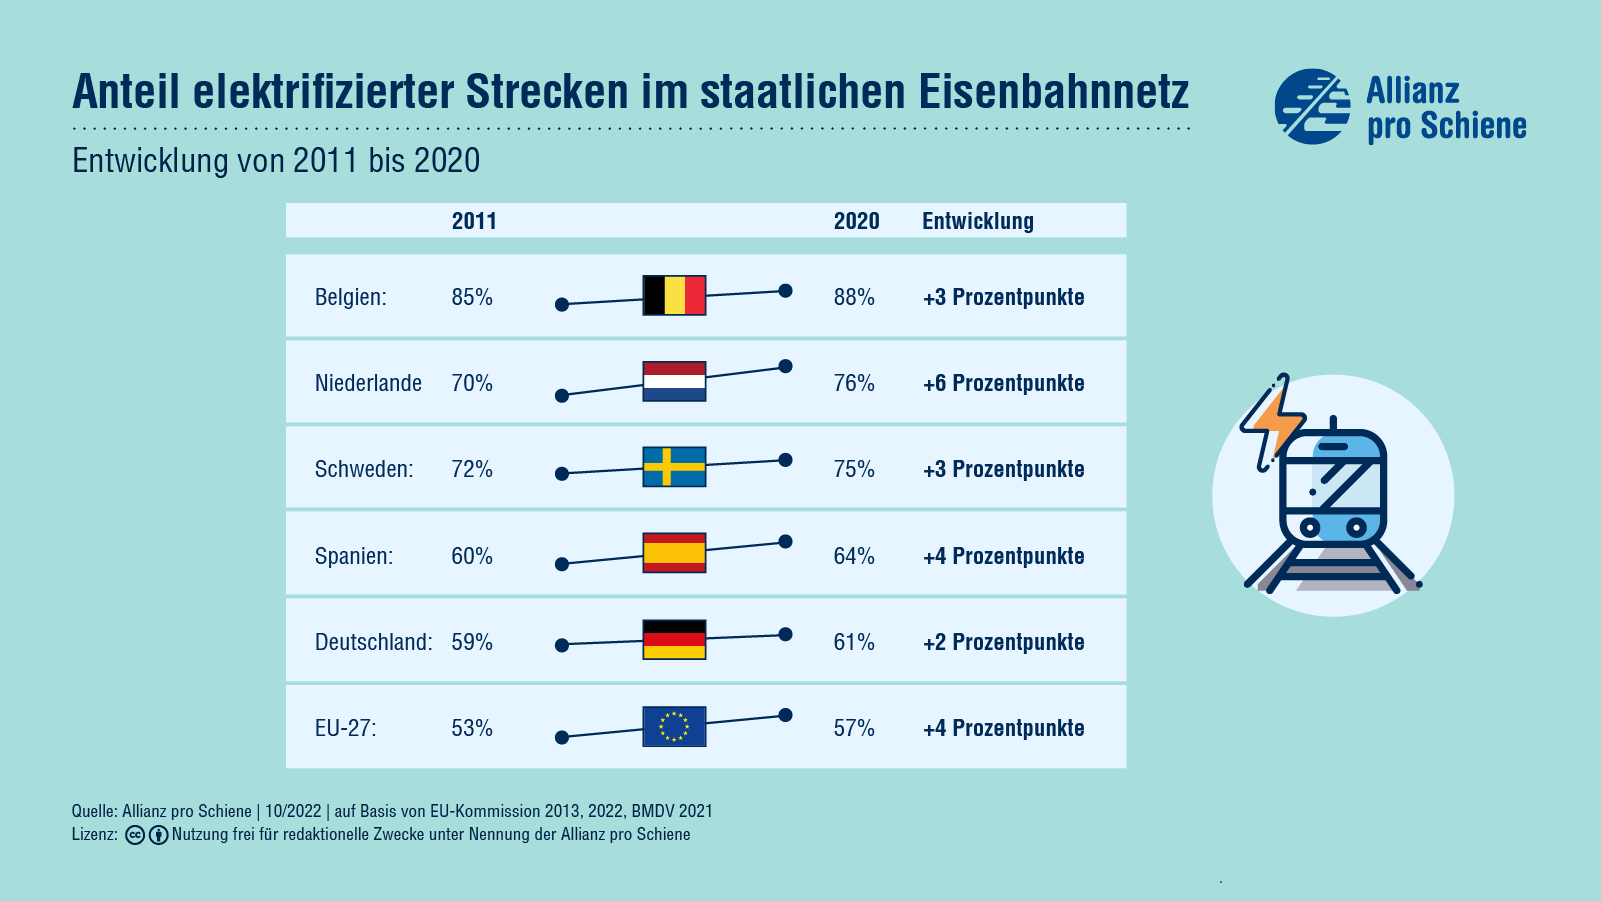 Anteil der elektrifizierten Bahnstrecken im europäischen Vergleich.